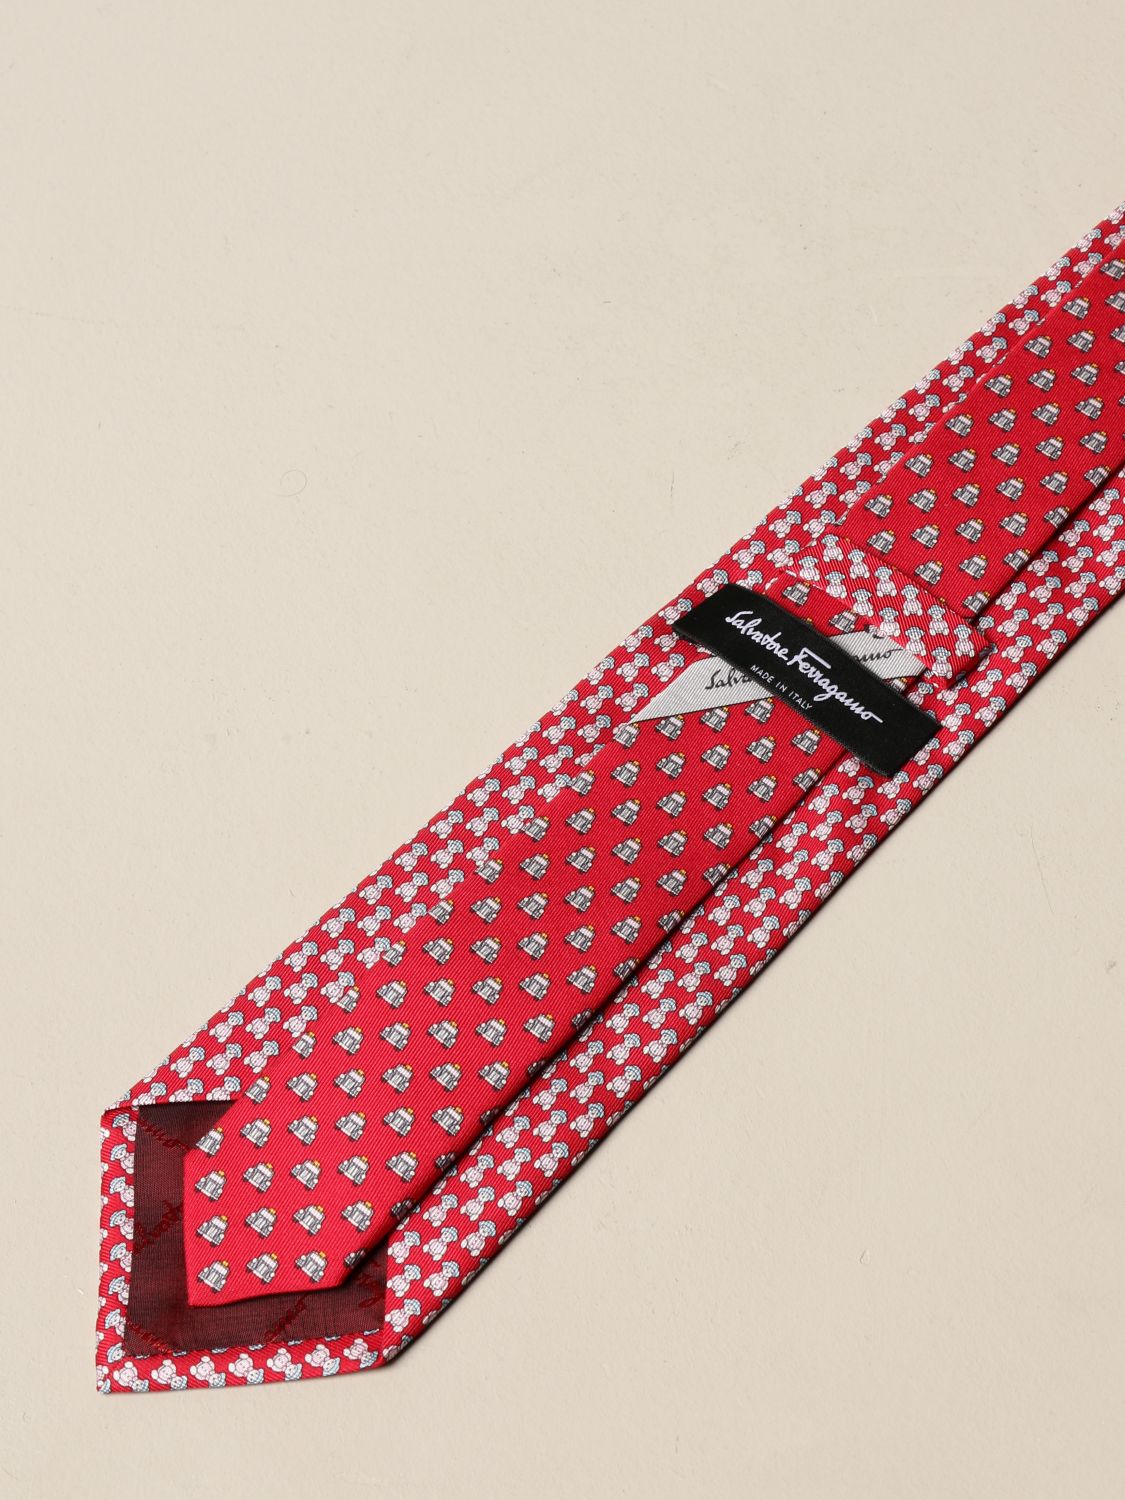 SALVATORE FERRAGAMO: silk tie with teddy bear pattern | Tie Salvatore